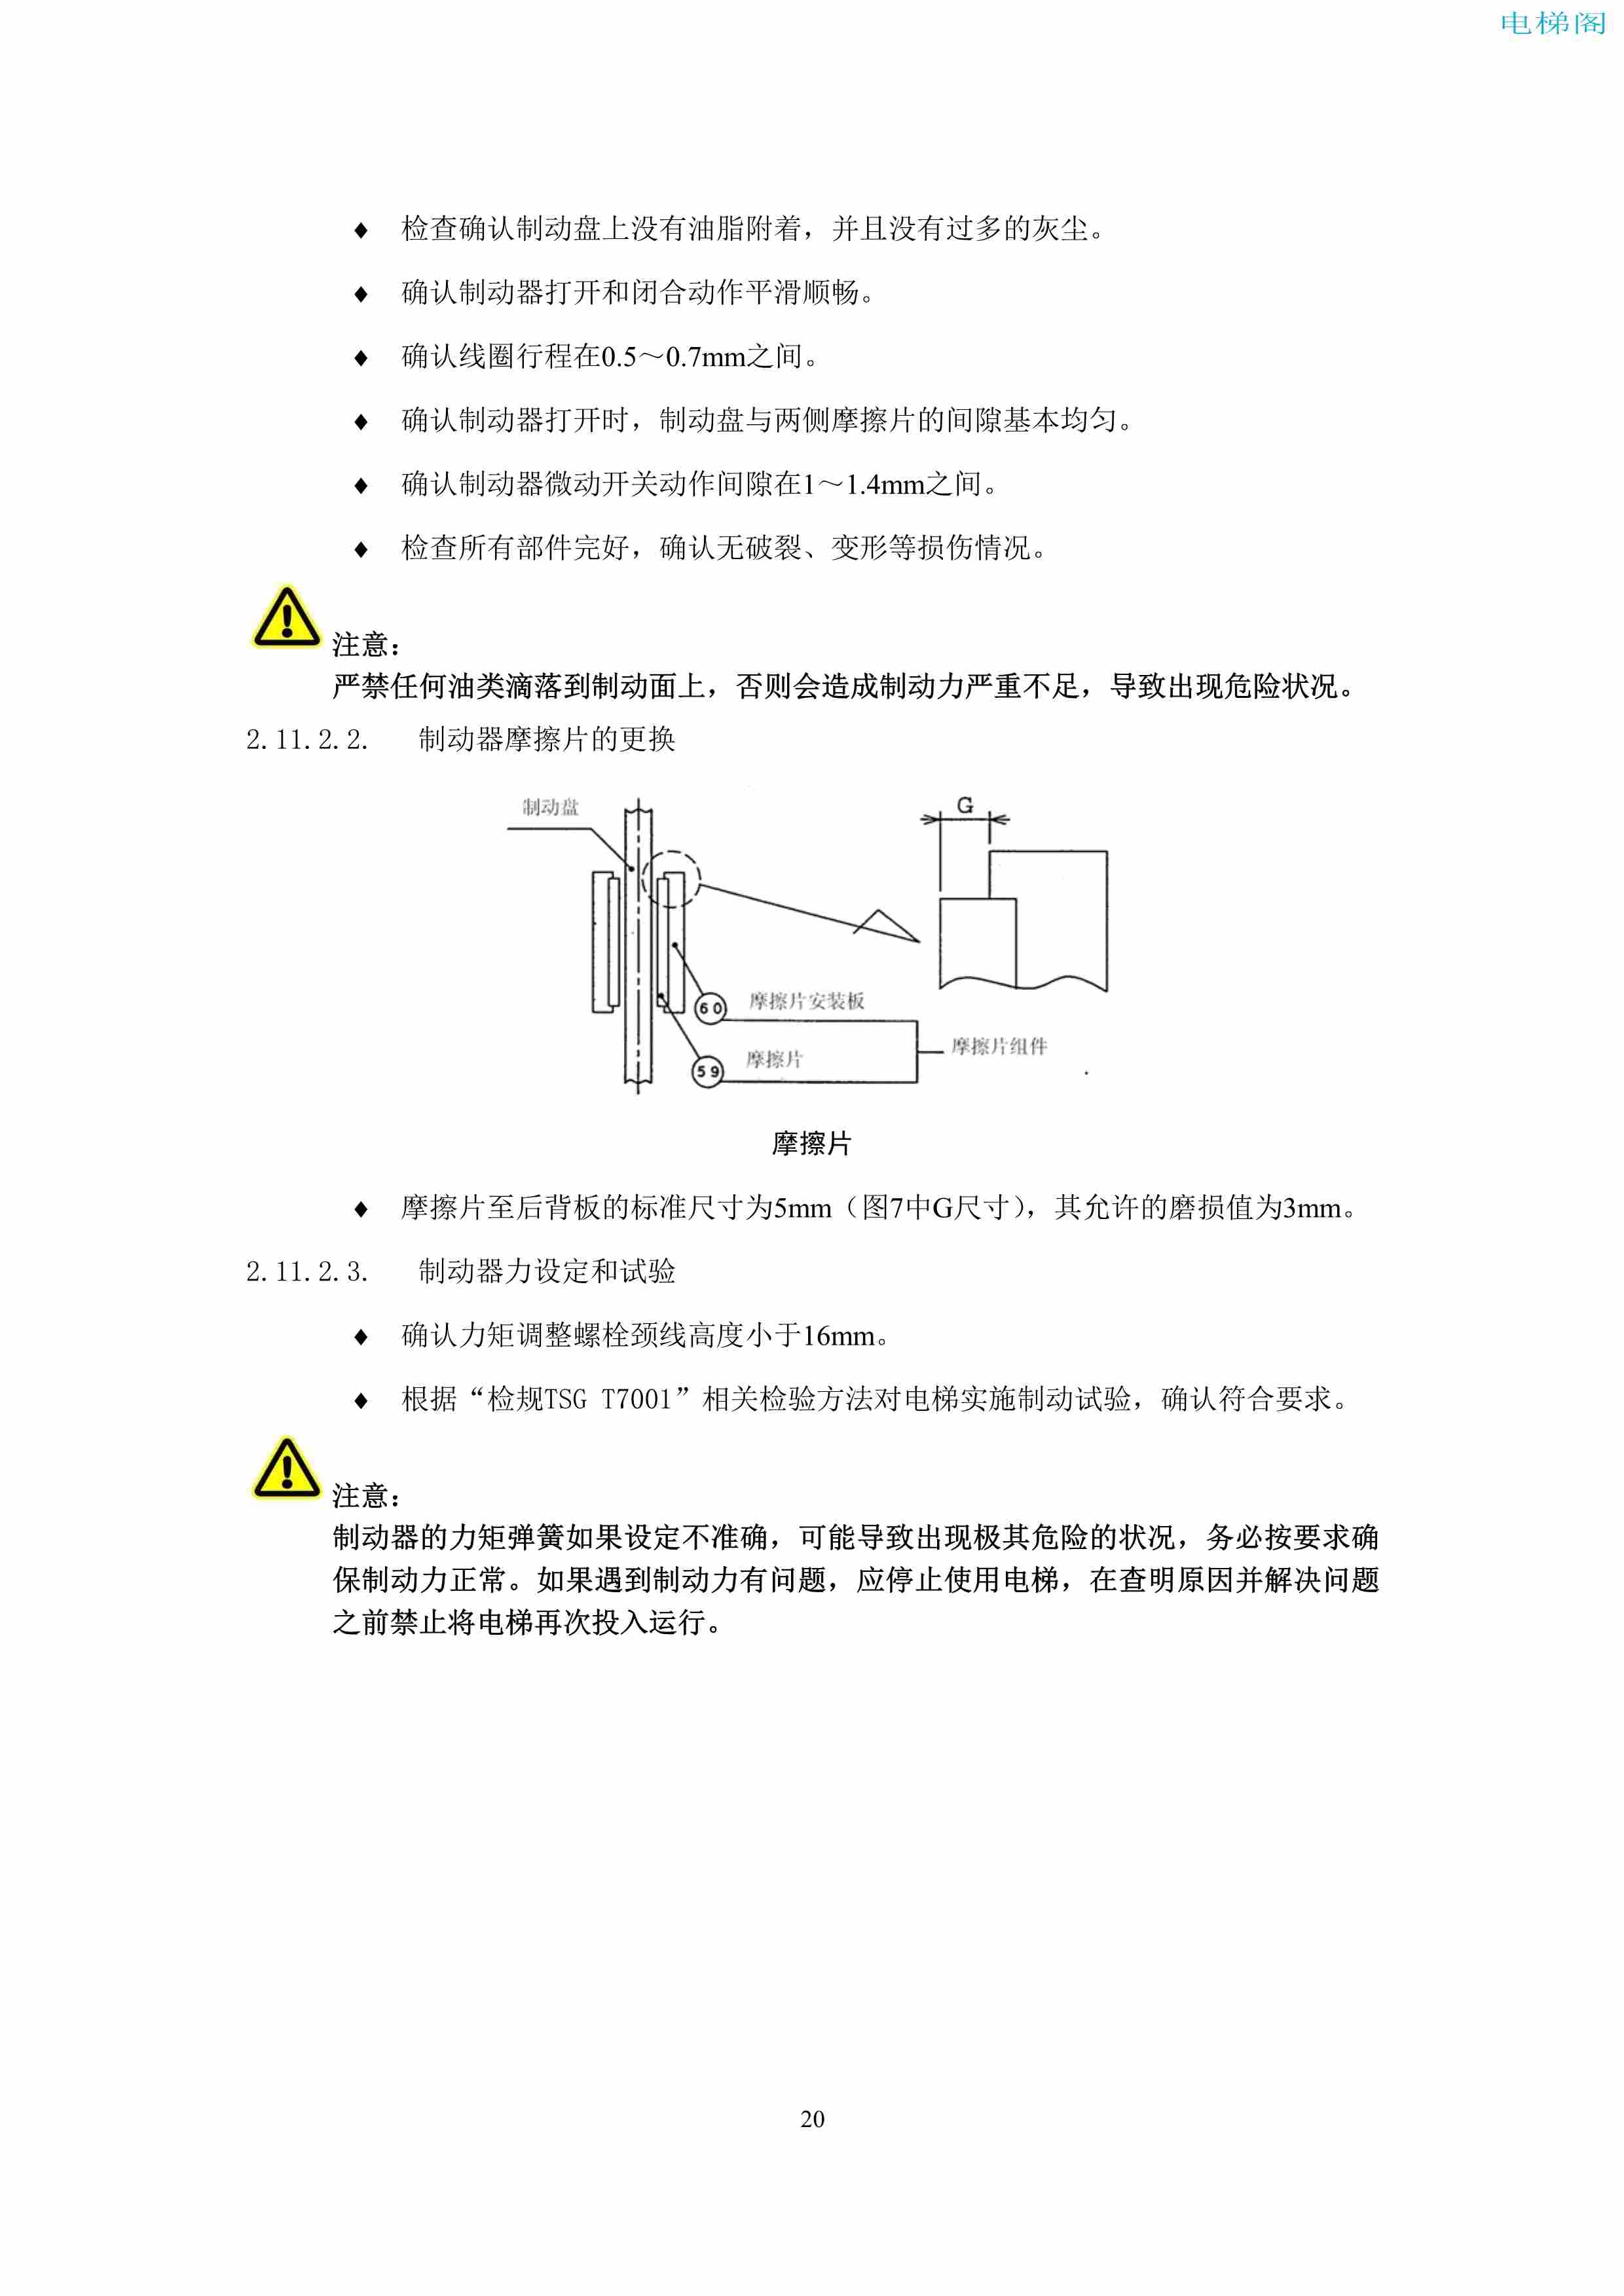 上海三菱电梯有限公司电梯制动器维护作业要领汇编_22.jpg